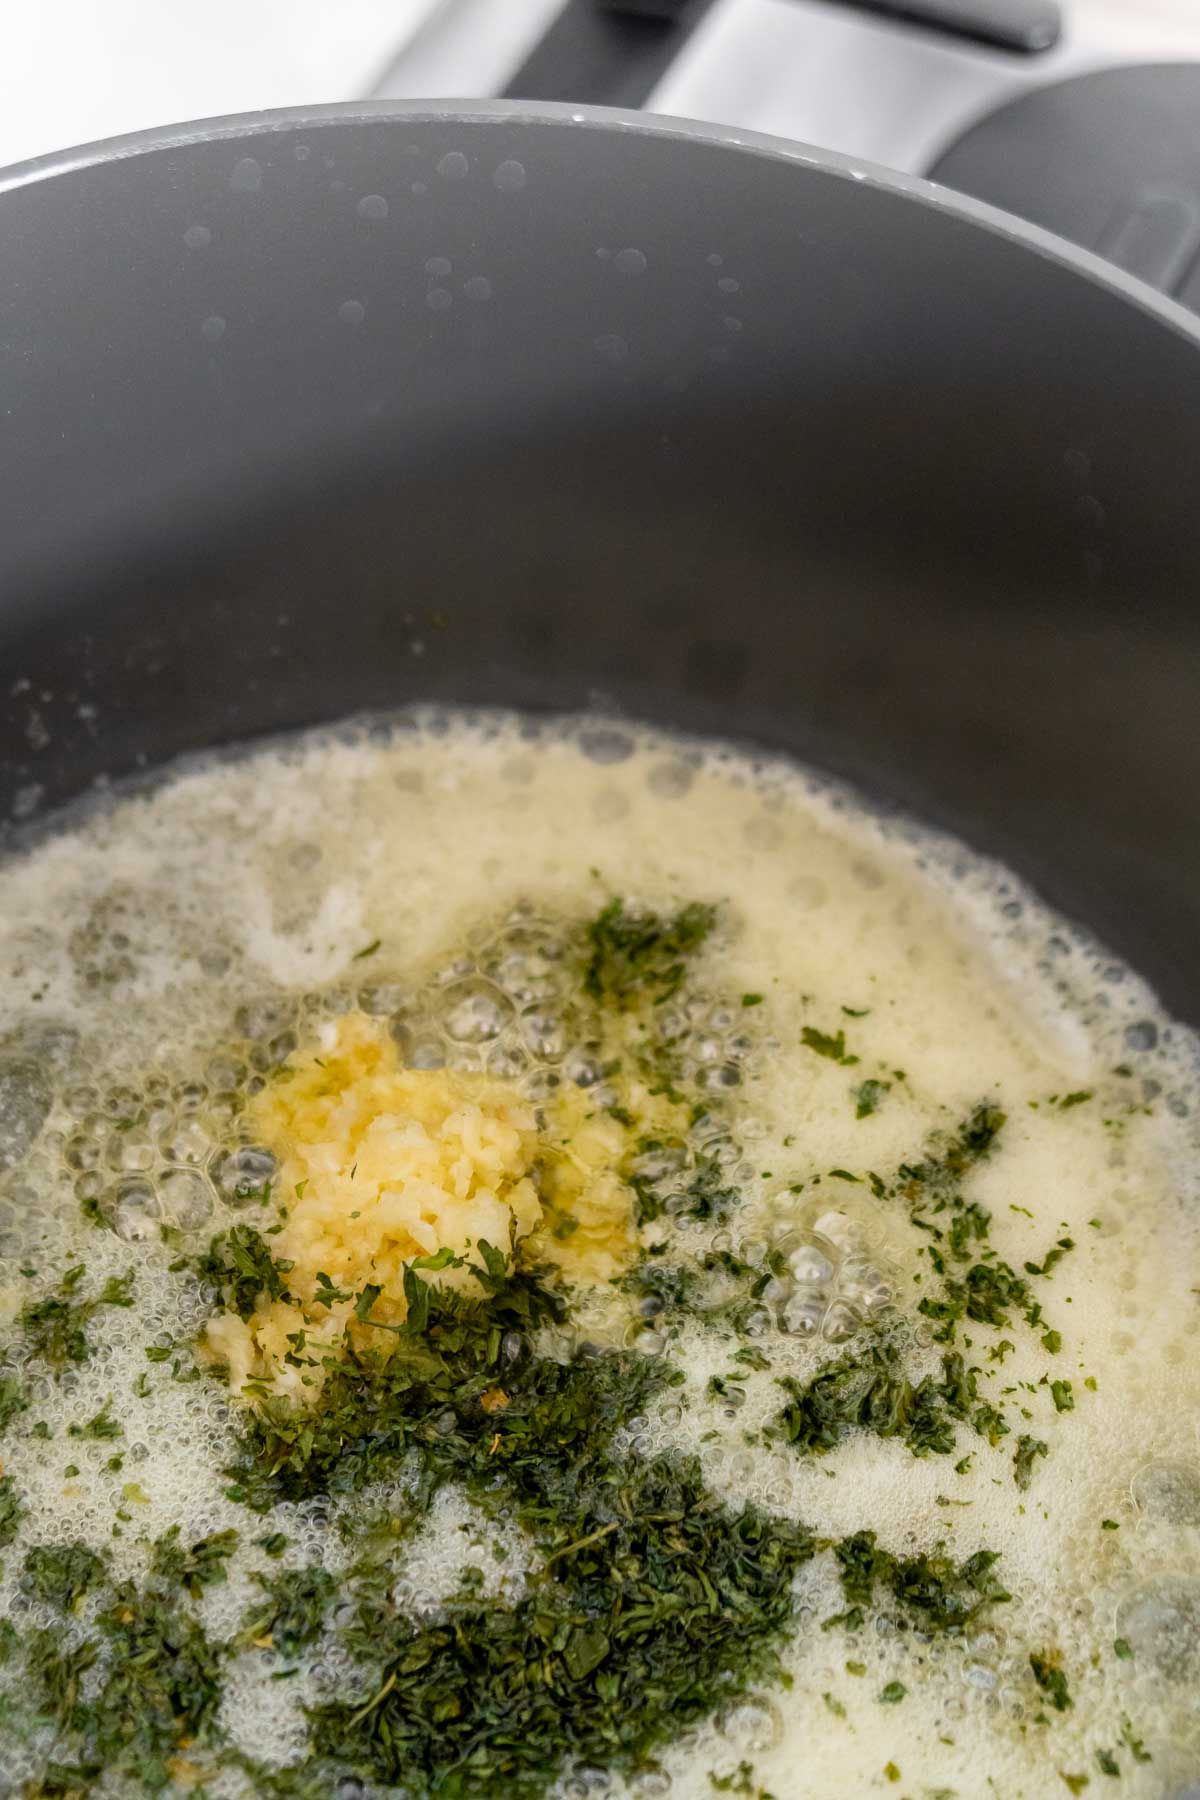 Đun chảy bơ với tỏi và mùi tây trên chảo